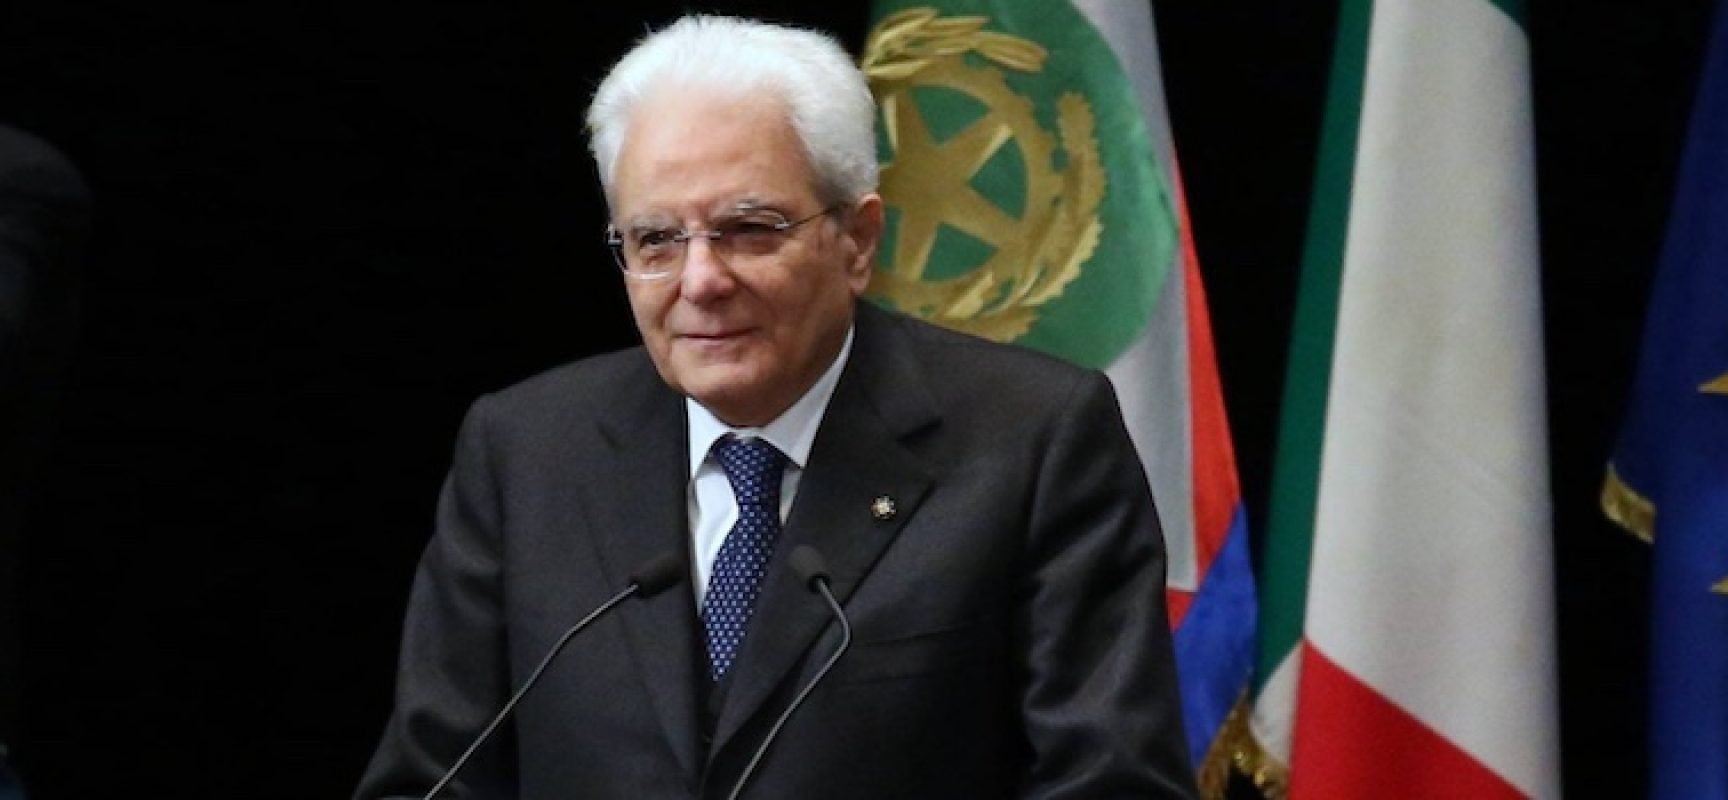 Presidenza della Repubblica: rielezione Mattarella, i commenti della politica biscegliese